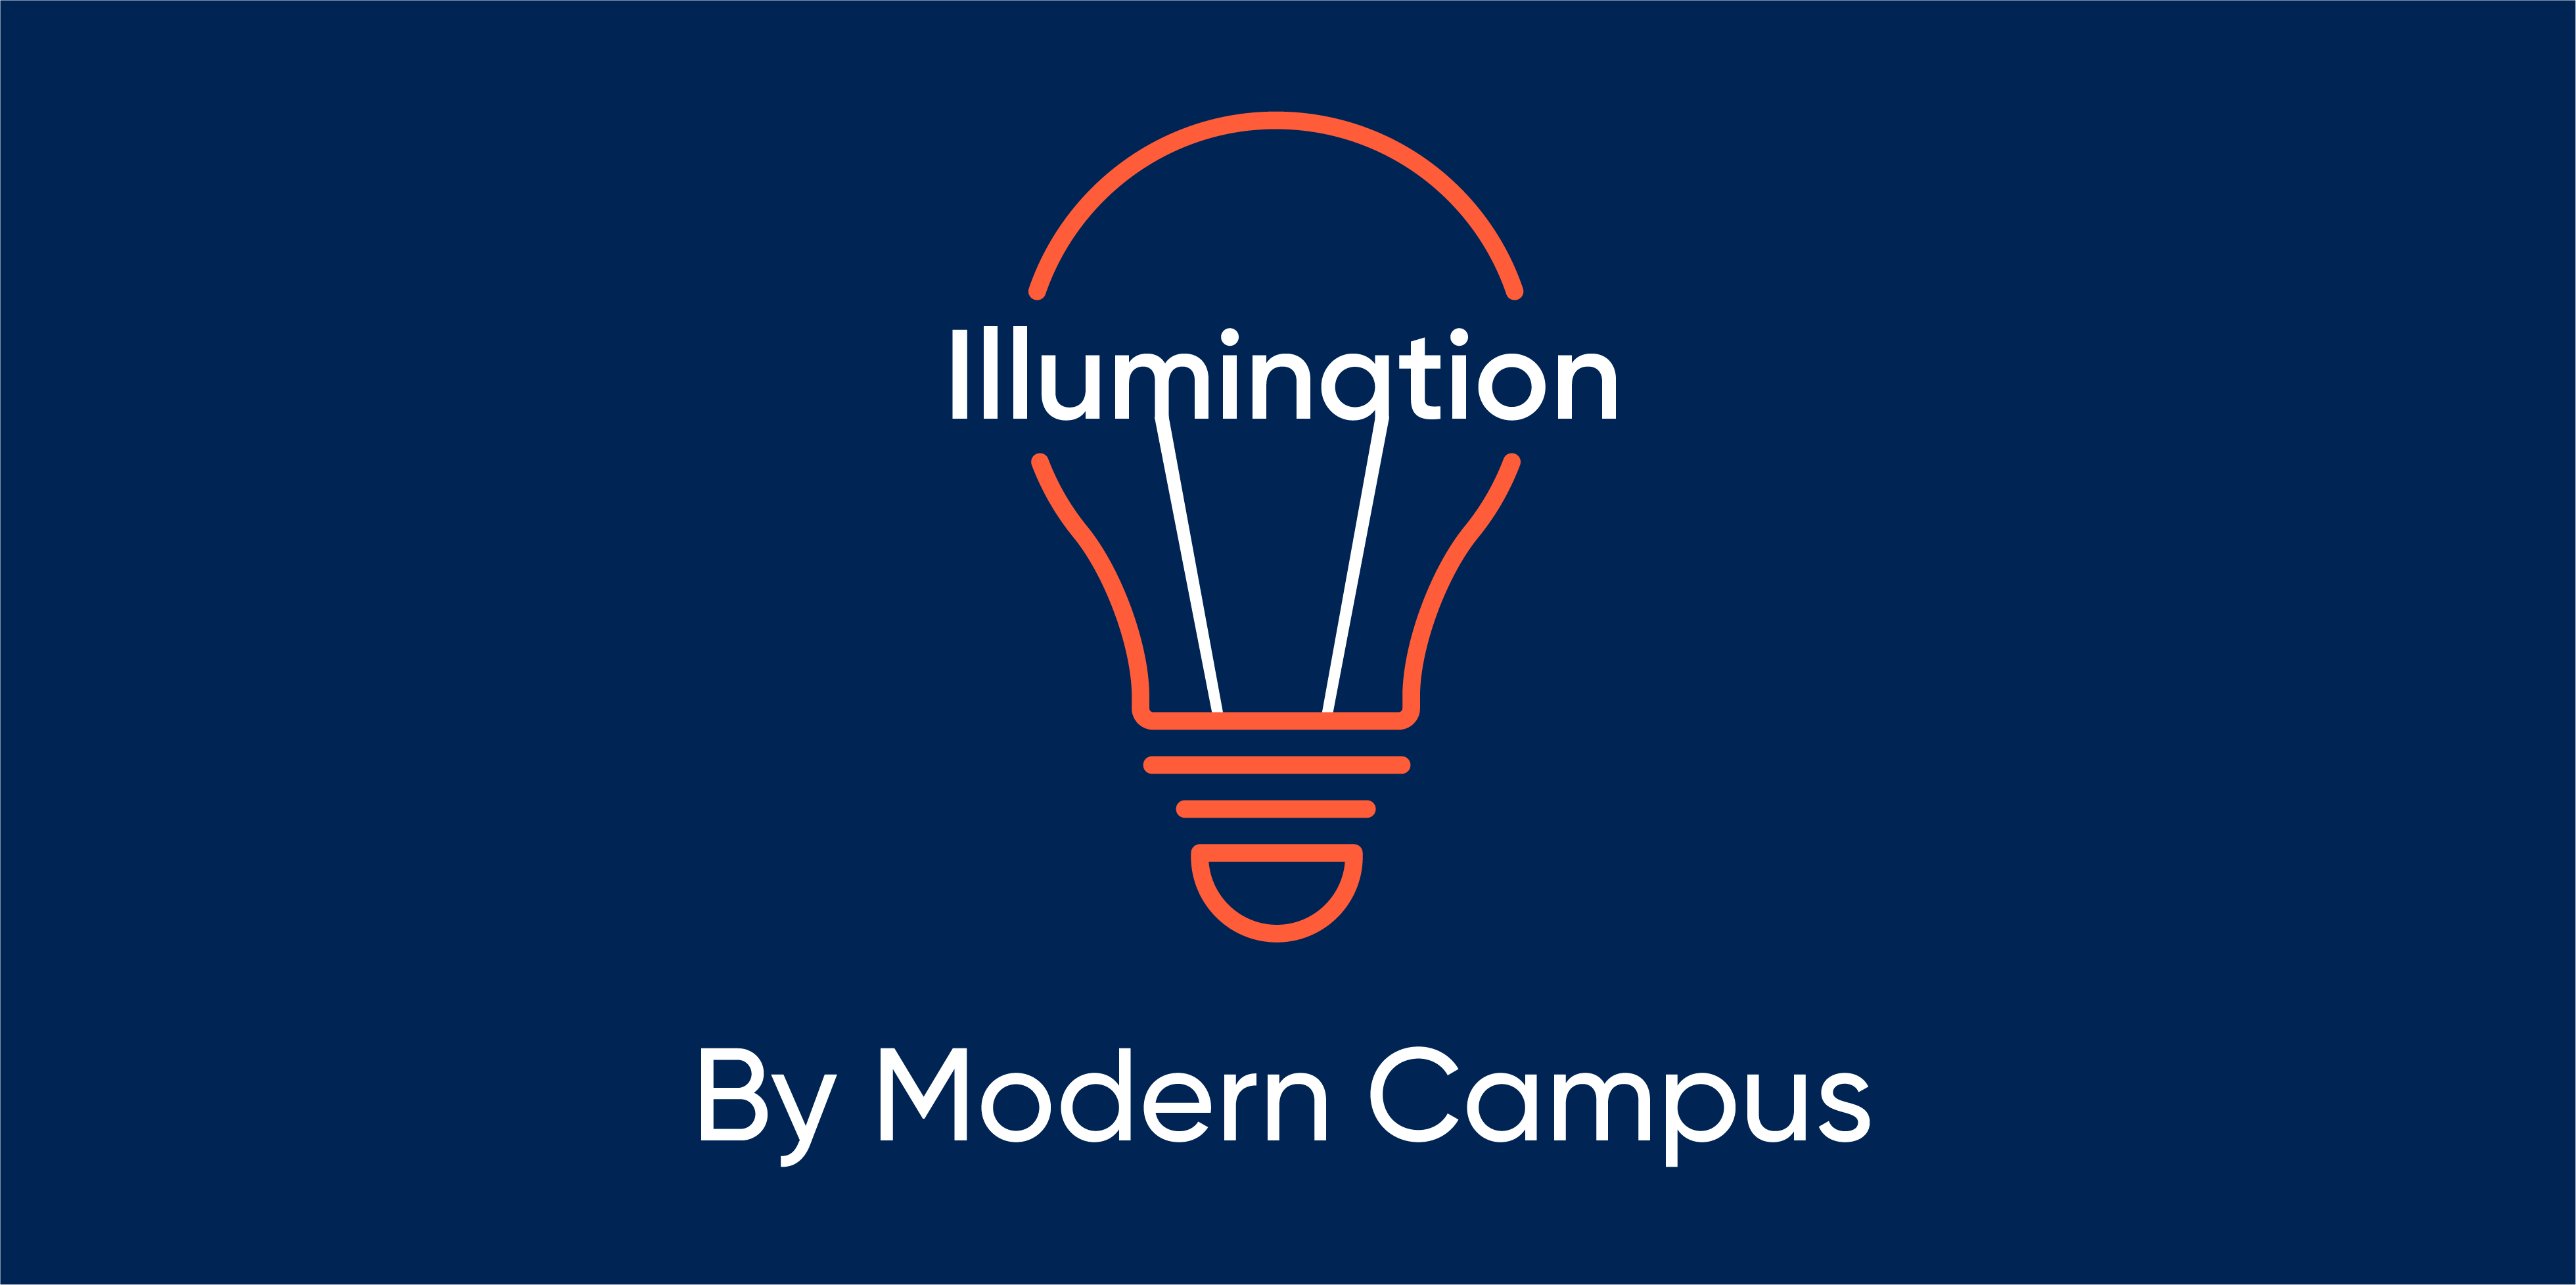 Episode 149: Illumination by Modern Campus